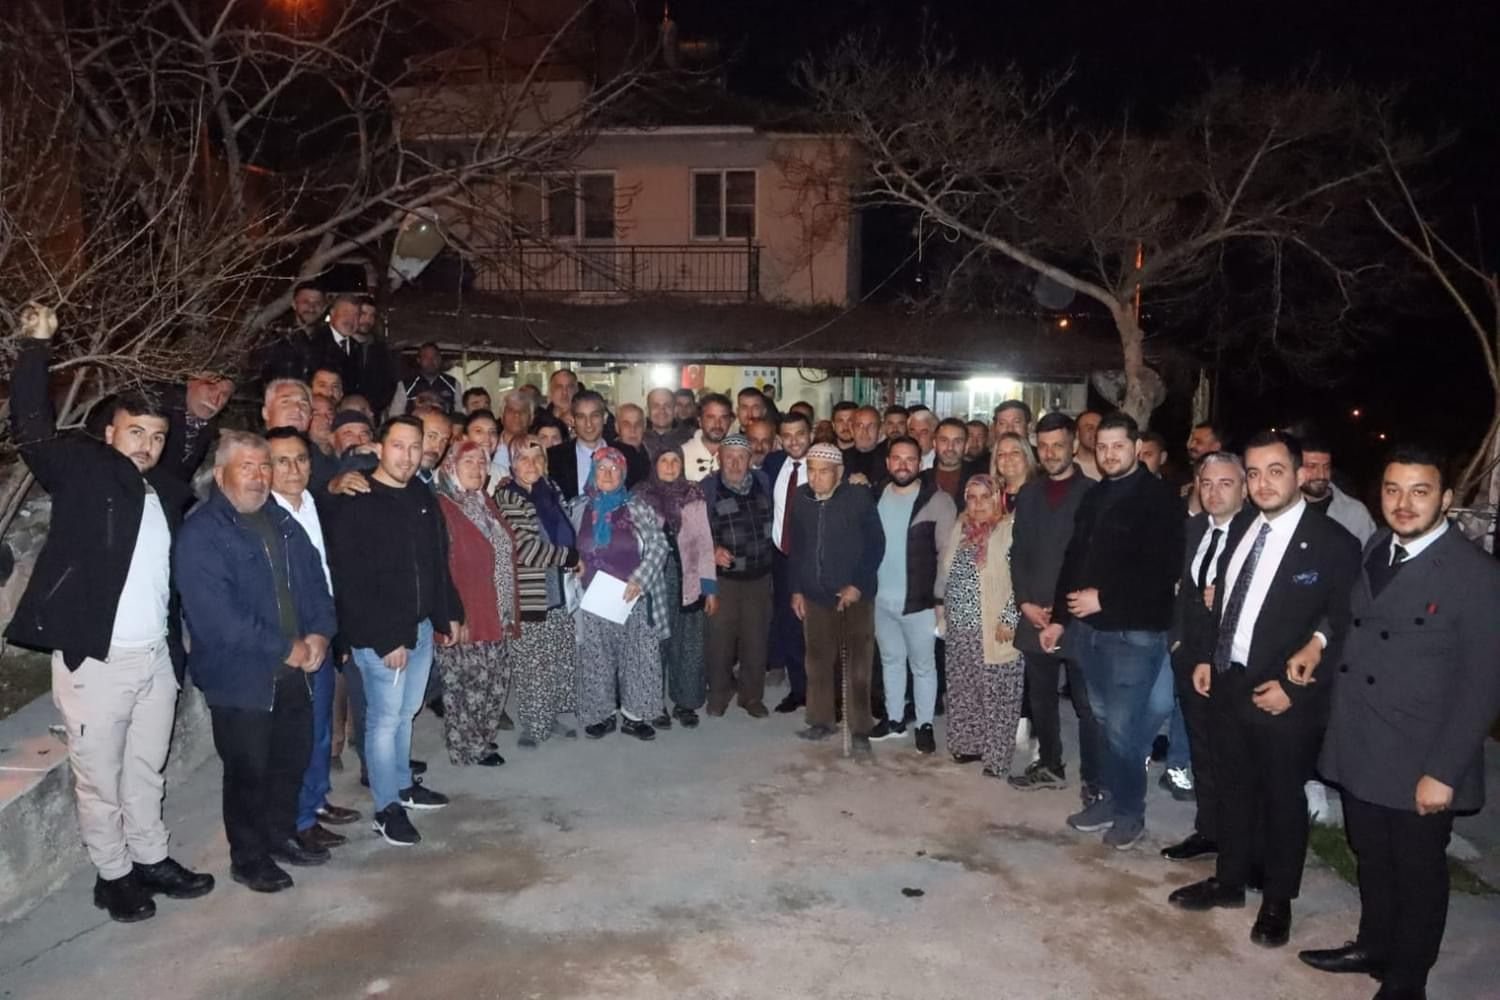 Kent Merkezinden, Köylere Herkes Ahmet Karadağ Diyor (2)